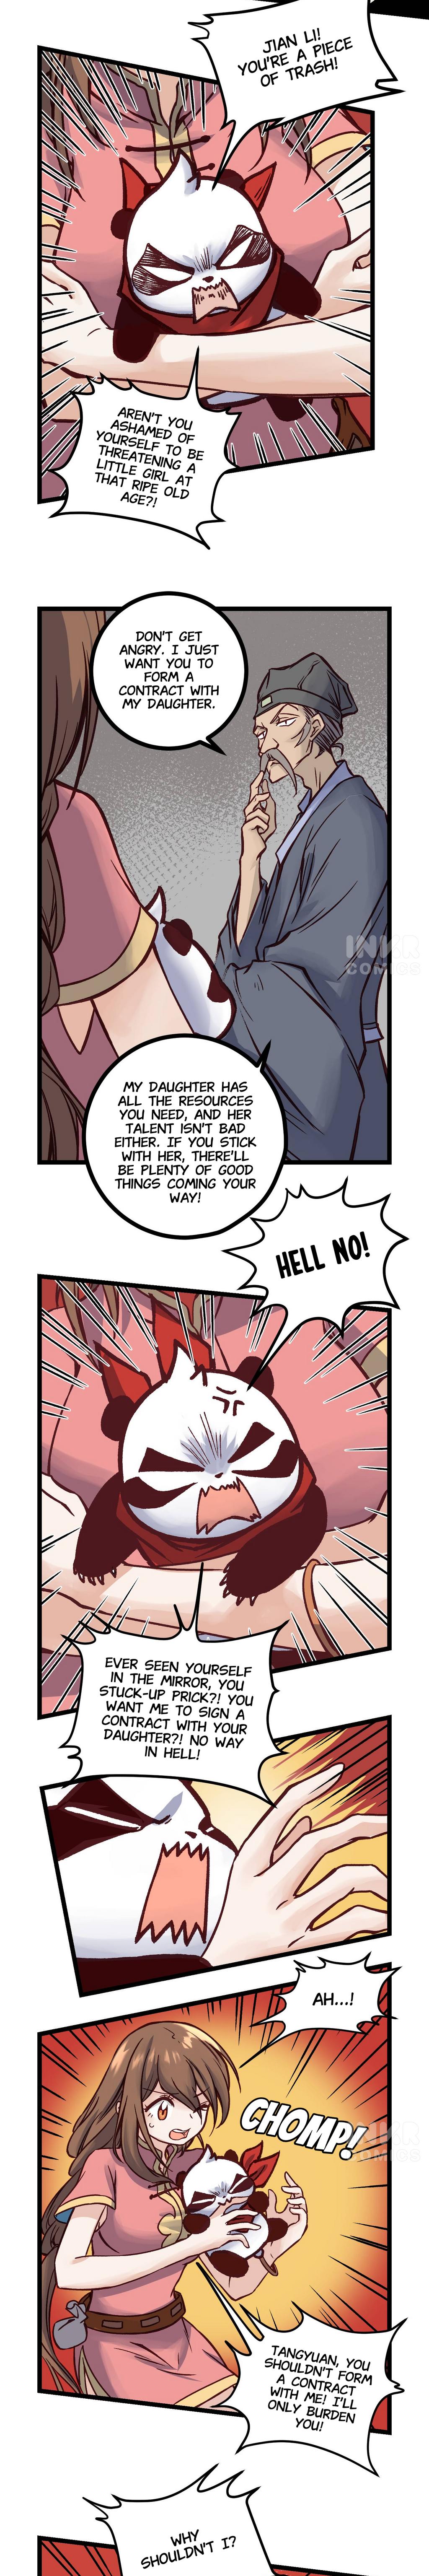 Naughty Panda - Page 2